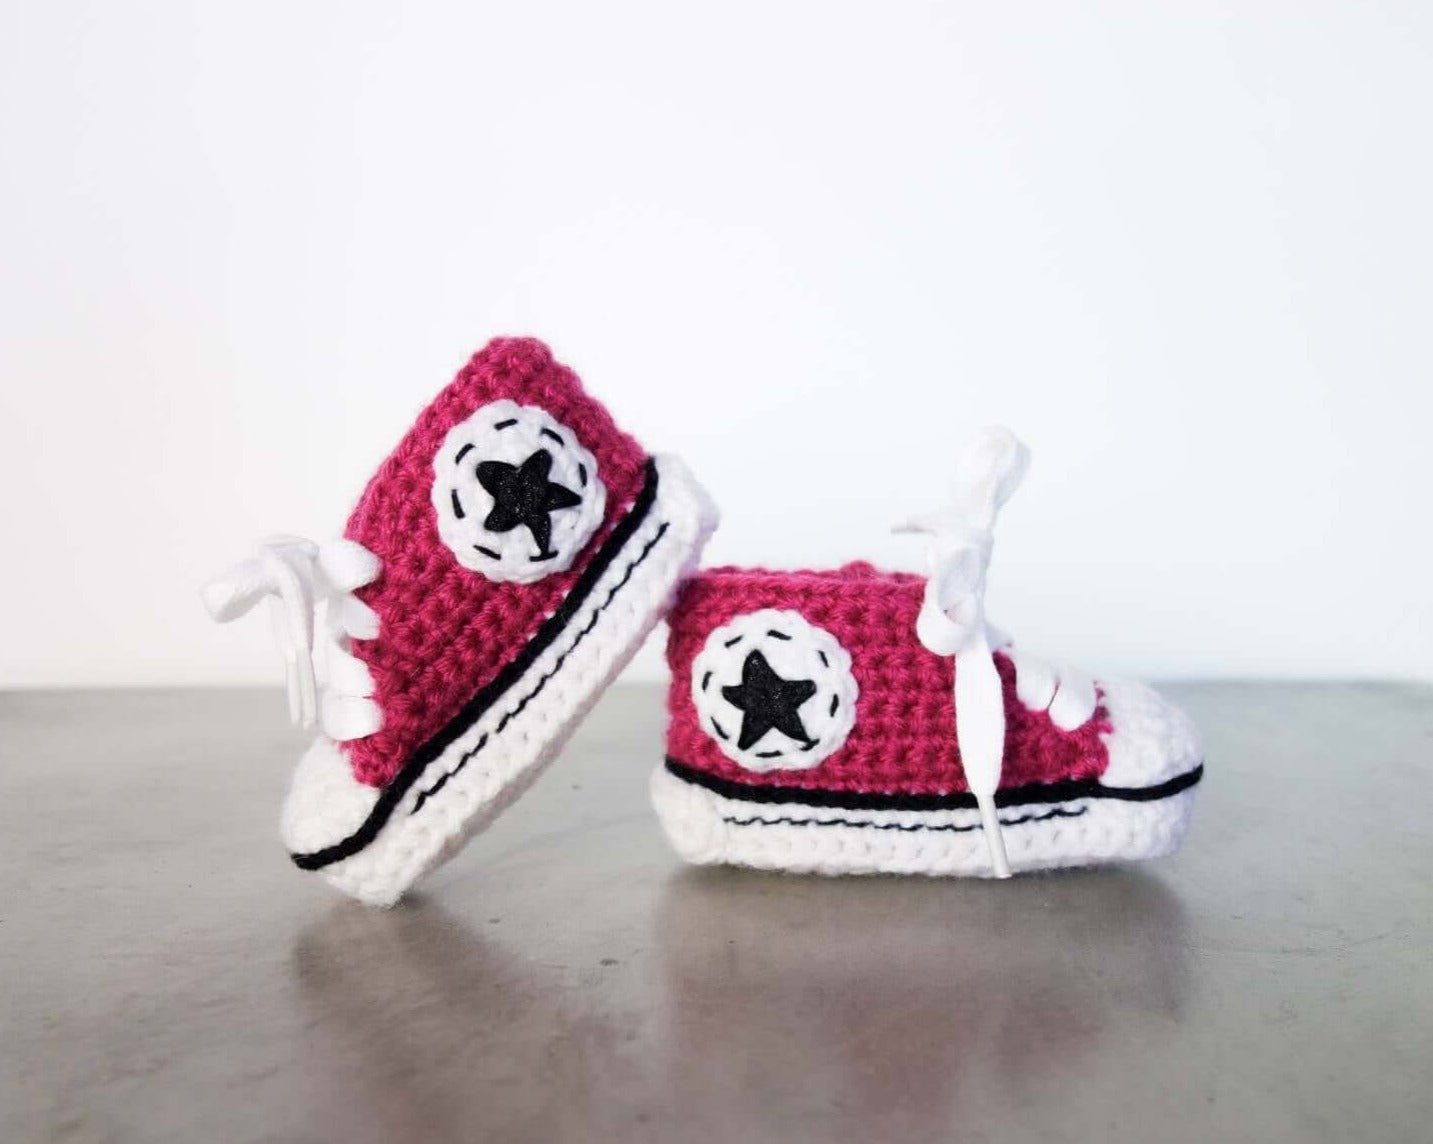 Patron au crochet - Petits souliers mignons - Crochetmilie